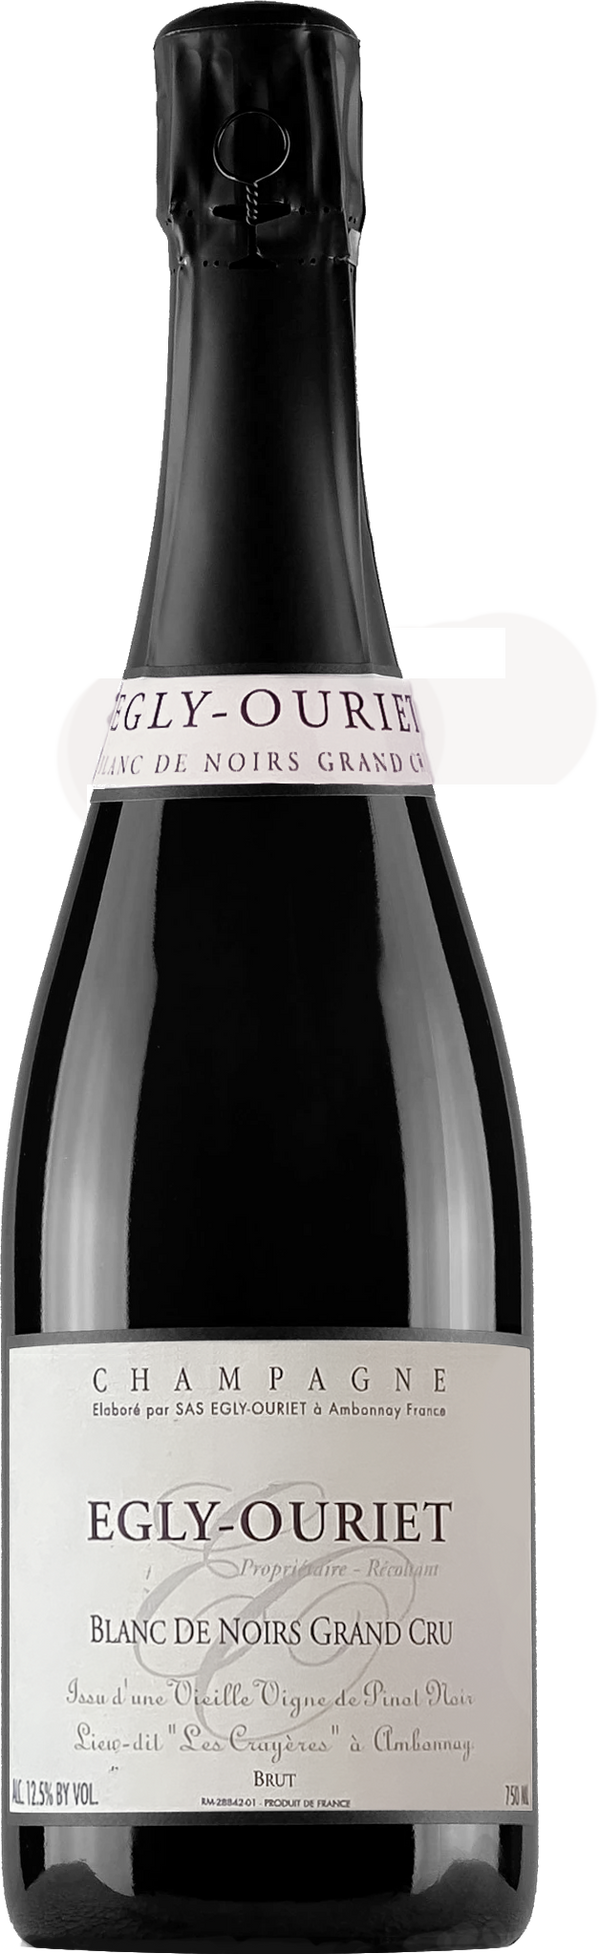 Champagne Egly-Ouriet Grand Cru Blanc de Noirs Vieilles Vignes Les Crayères NV (base 14, disg Jul 2021)